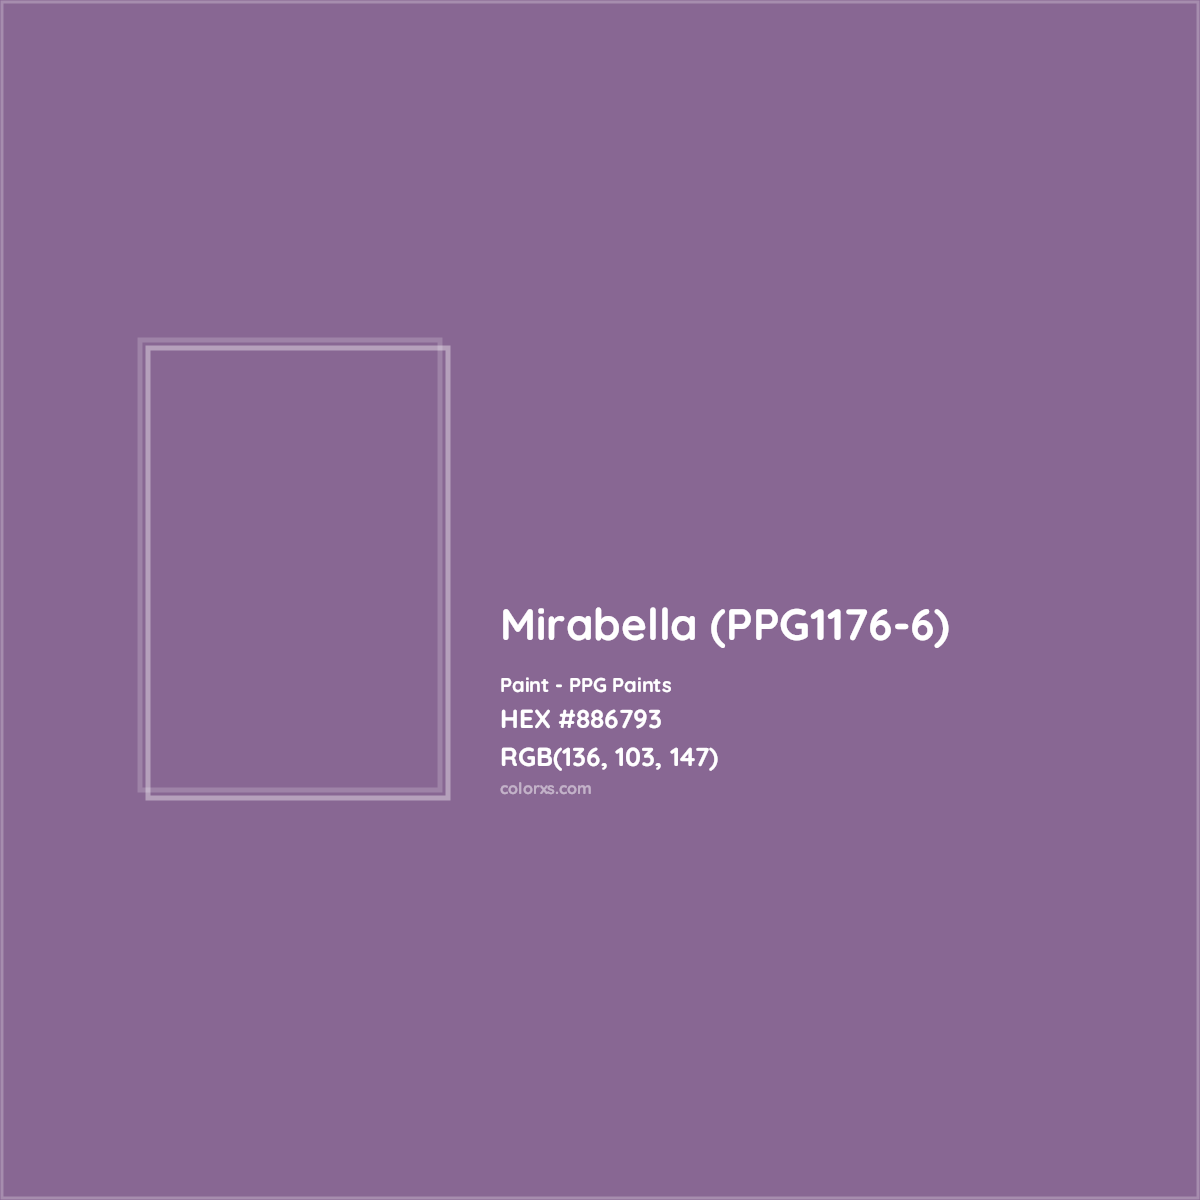 HEX #886793 Mirabella (PPG1176-6) Paint PPG Paints - Color Code